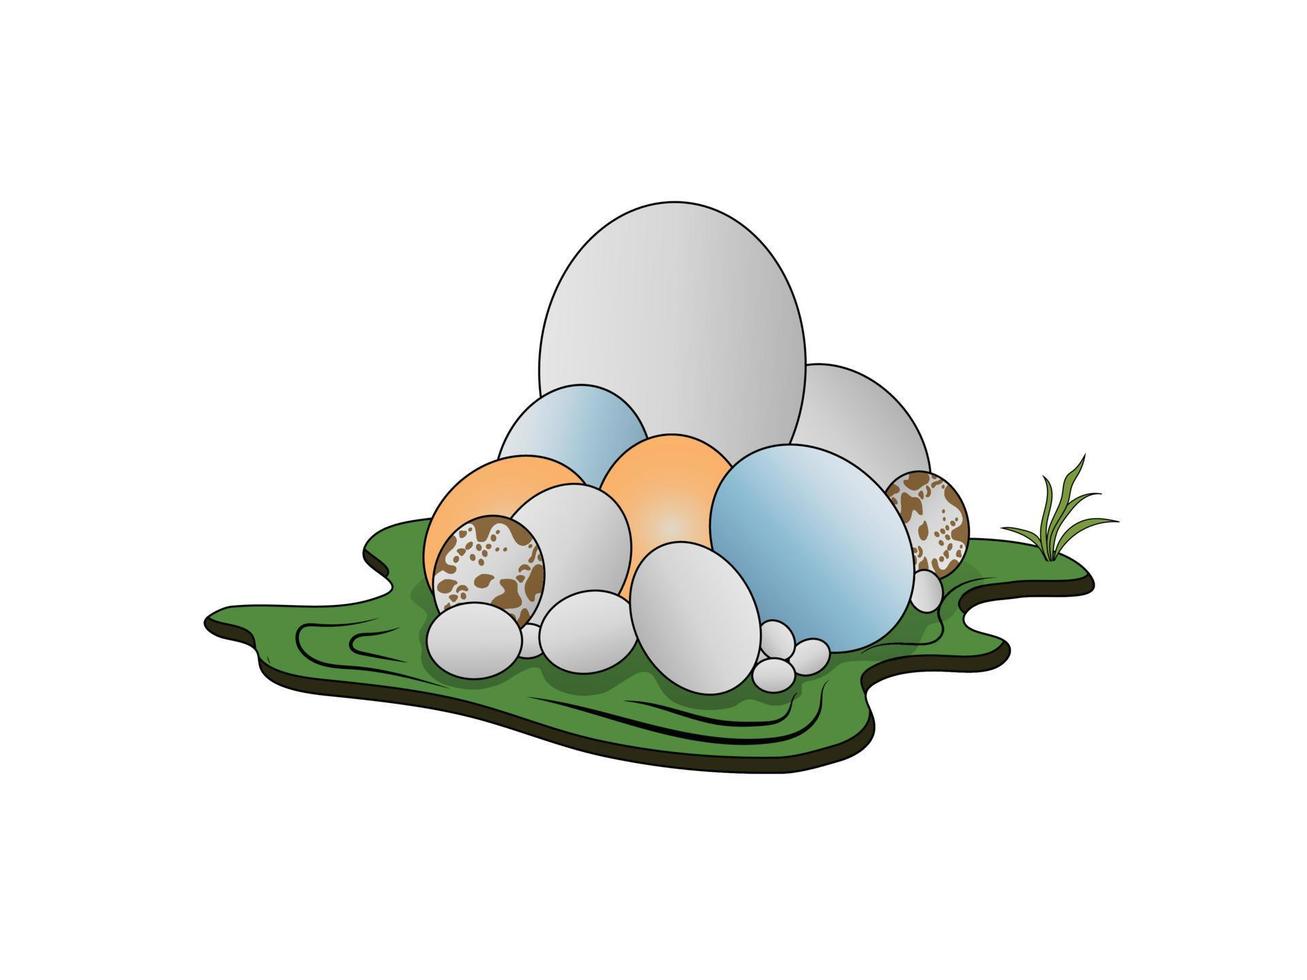 various eggs size.  duck egg, hens egg, swan egg,  lizard egg. vector